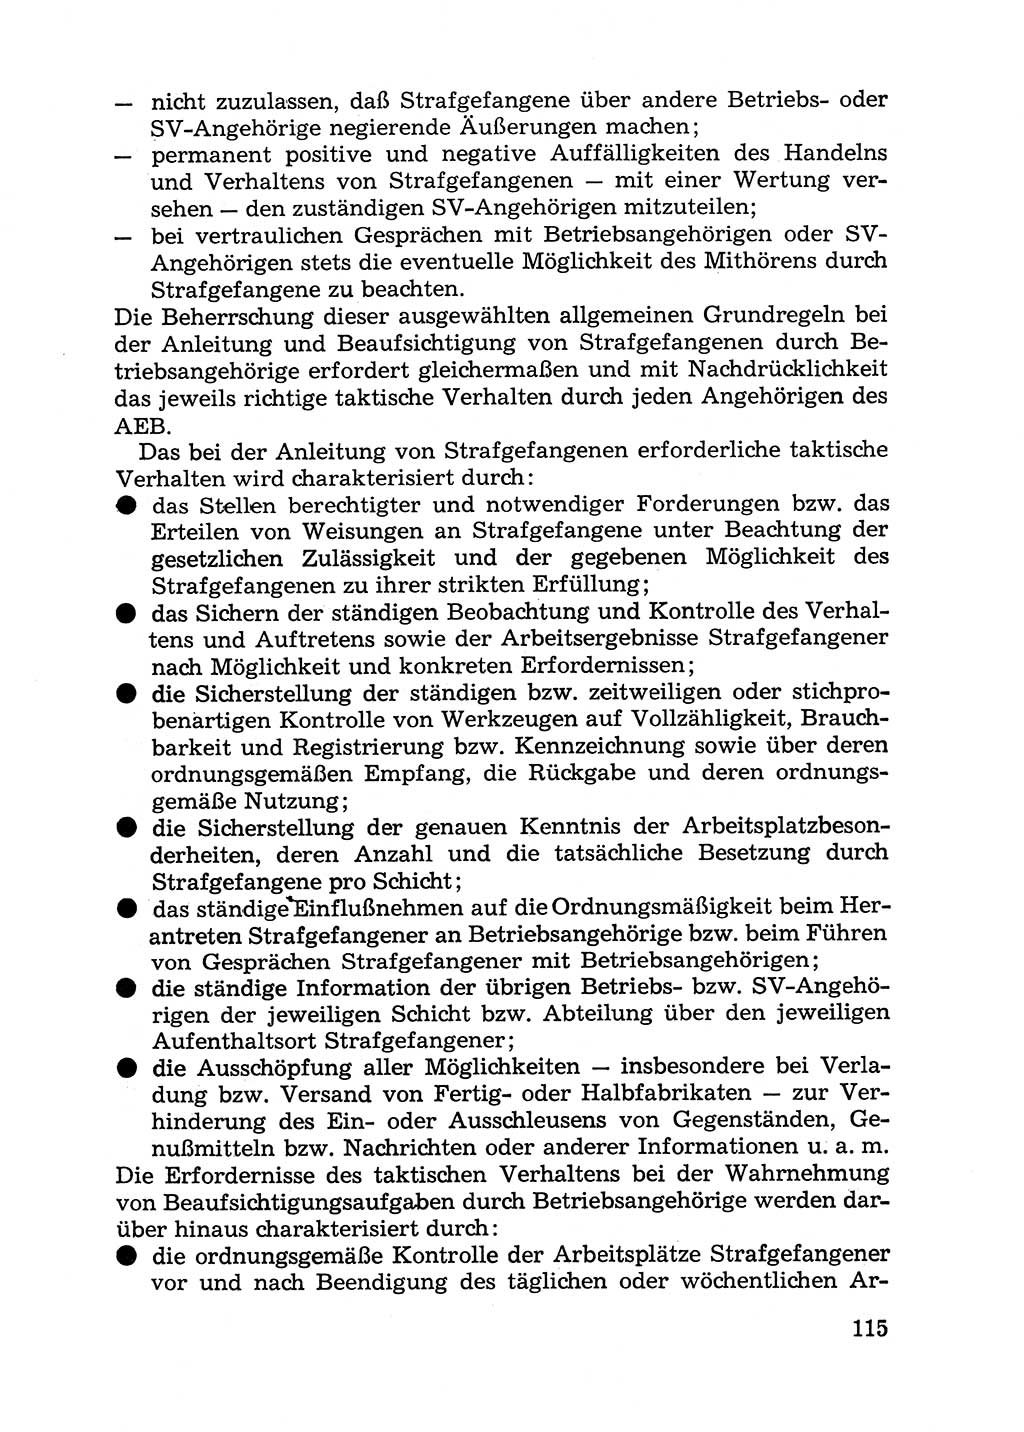 Handbuch für Betriebsangehörige, Abteilung Strafvollzug (SV) [Ministerium des Innern (MdI) Deutsche Demokratische Republik (DDR)] 1981, Seite 115 (Hb. BA Abt. SV MdI DDR 1981, S. 115)